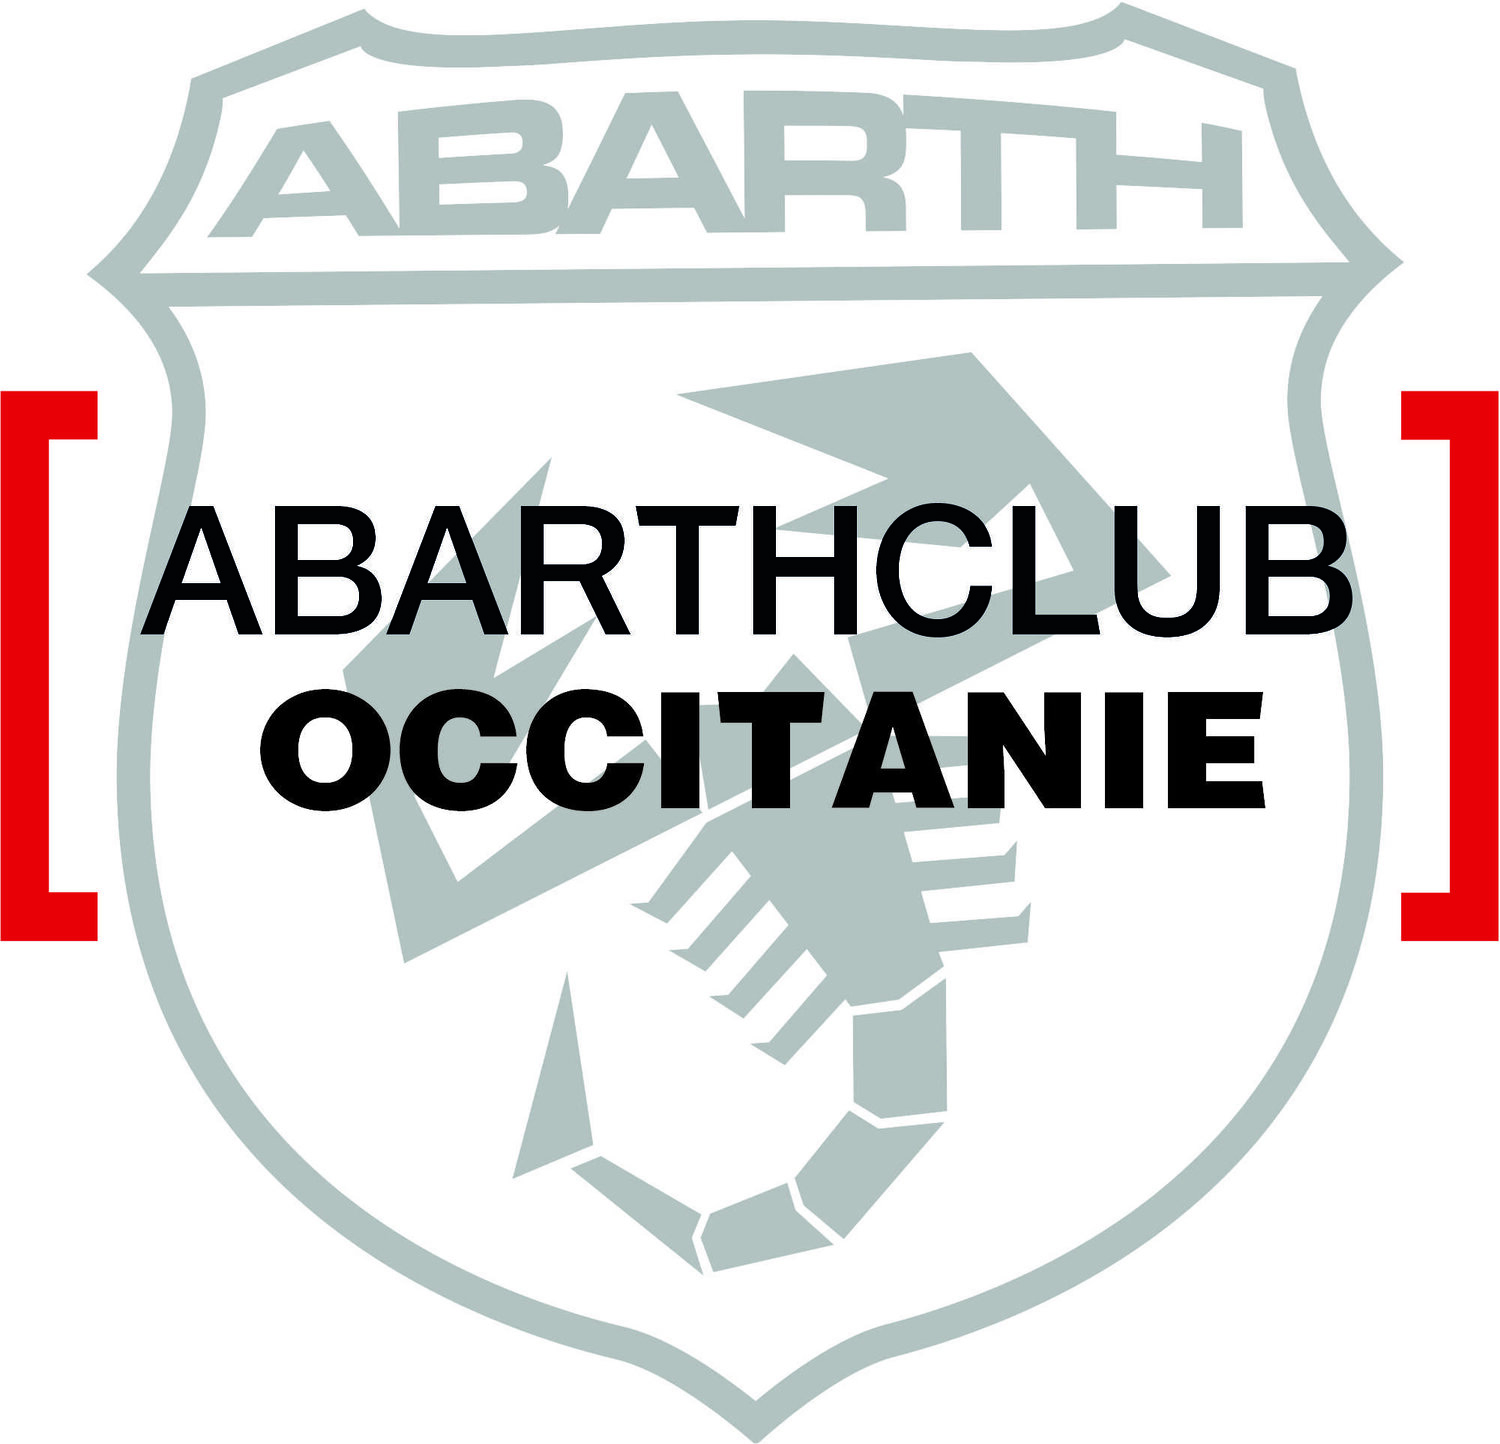 Abarth Club Occitanie